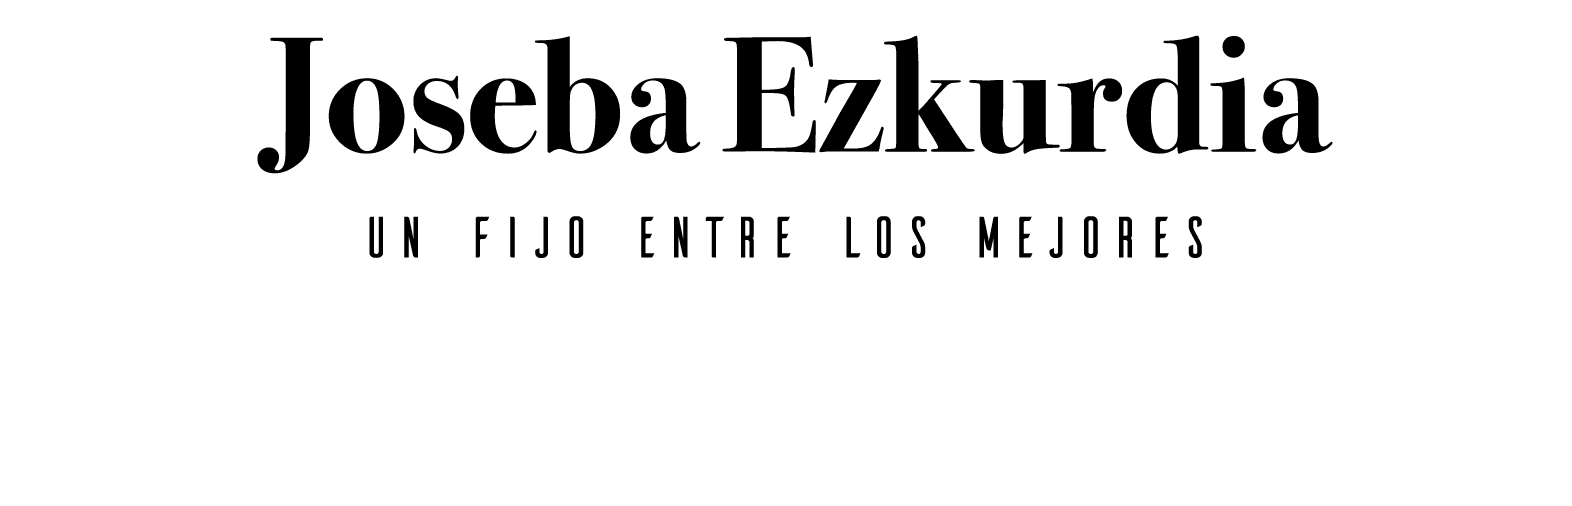 Joseba Ezkurdia Un fijo entre los mejores